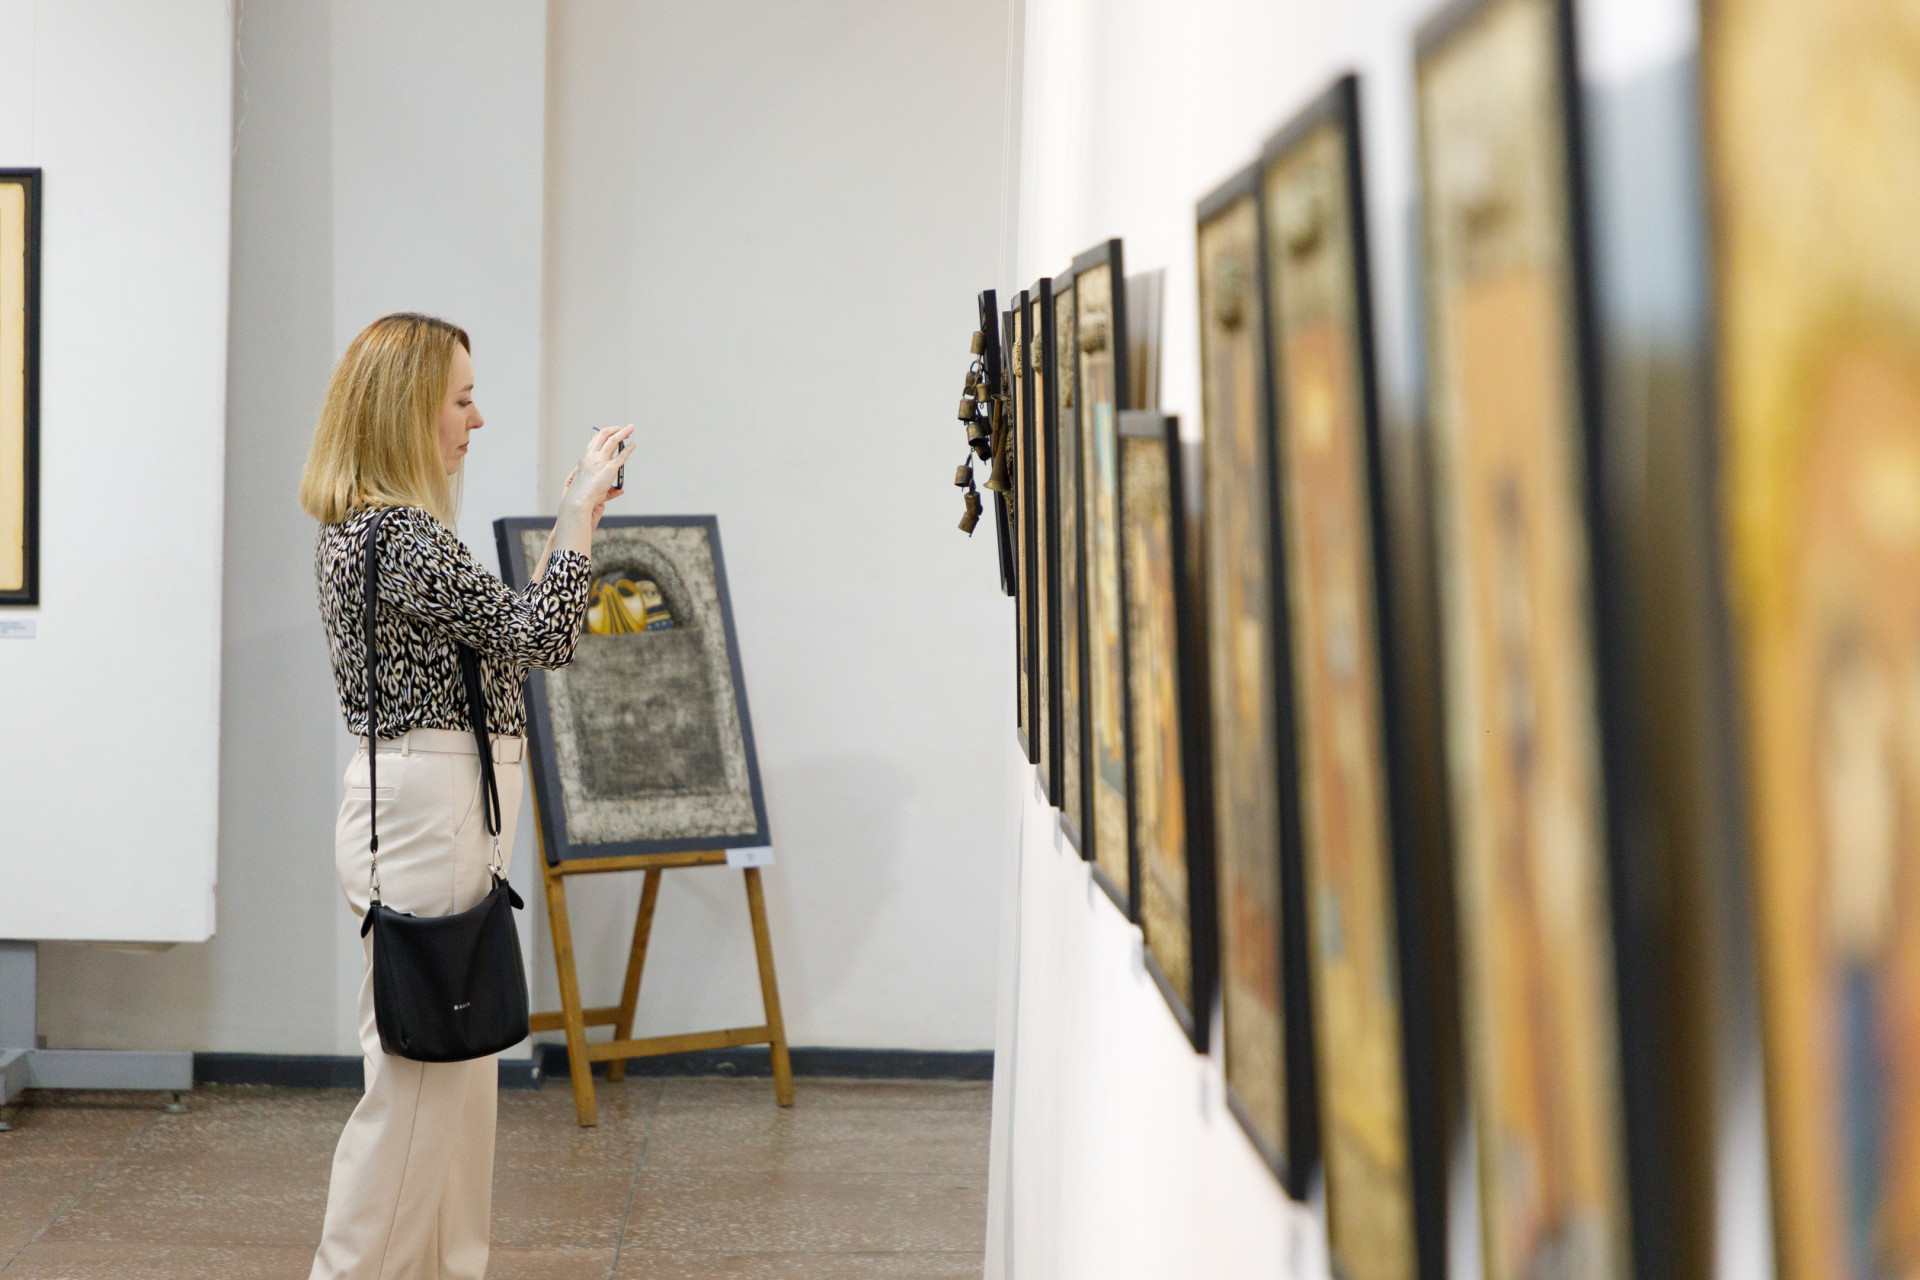 Работы тульских художников представят на выставке "Случайное постоянство" в Крапивне